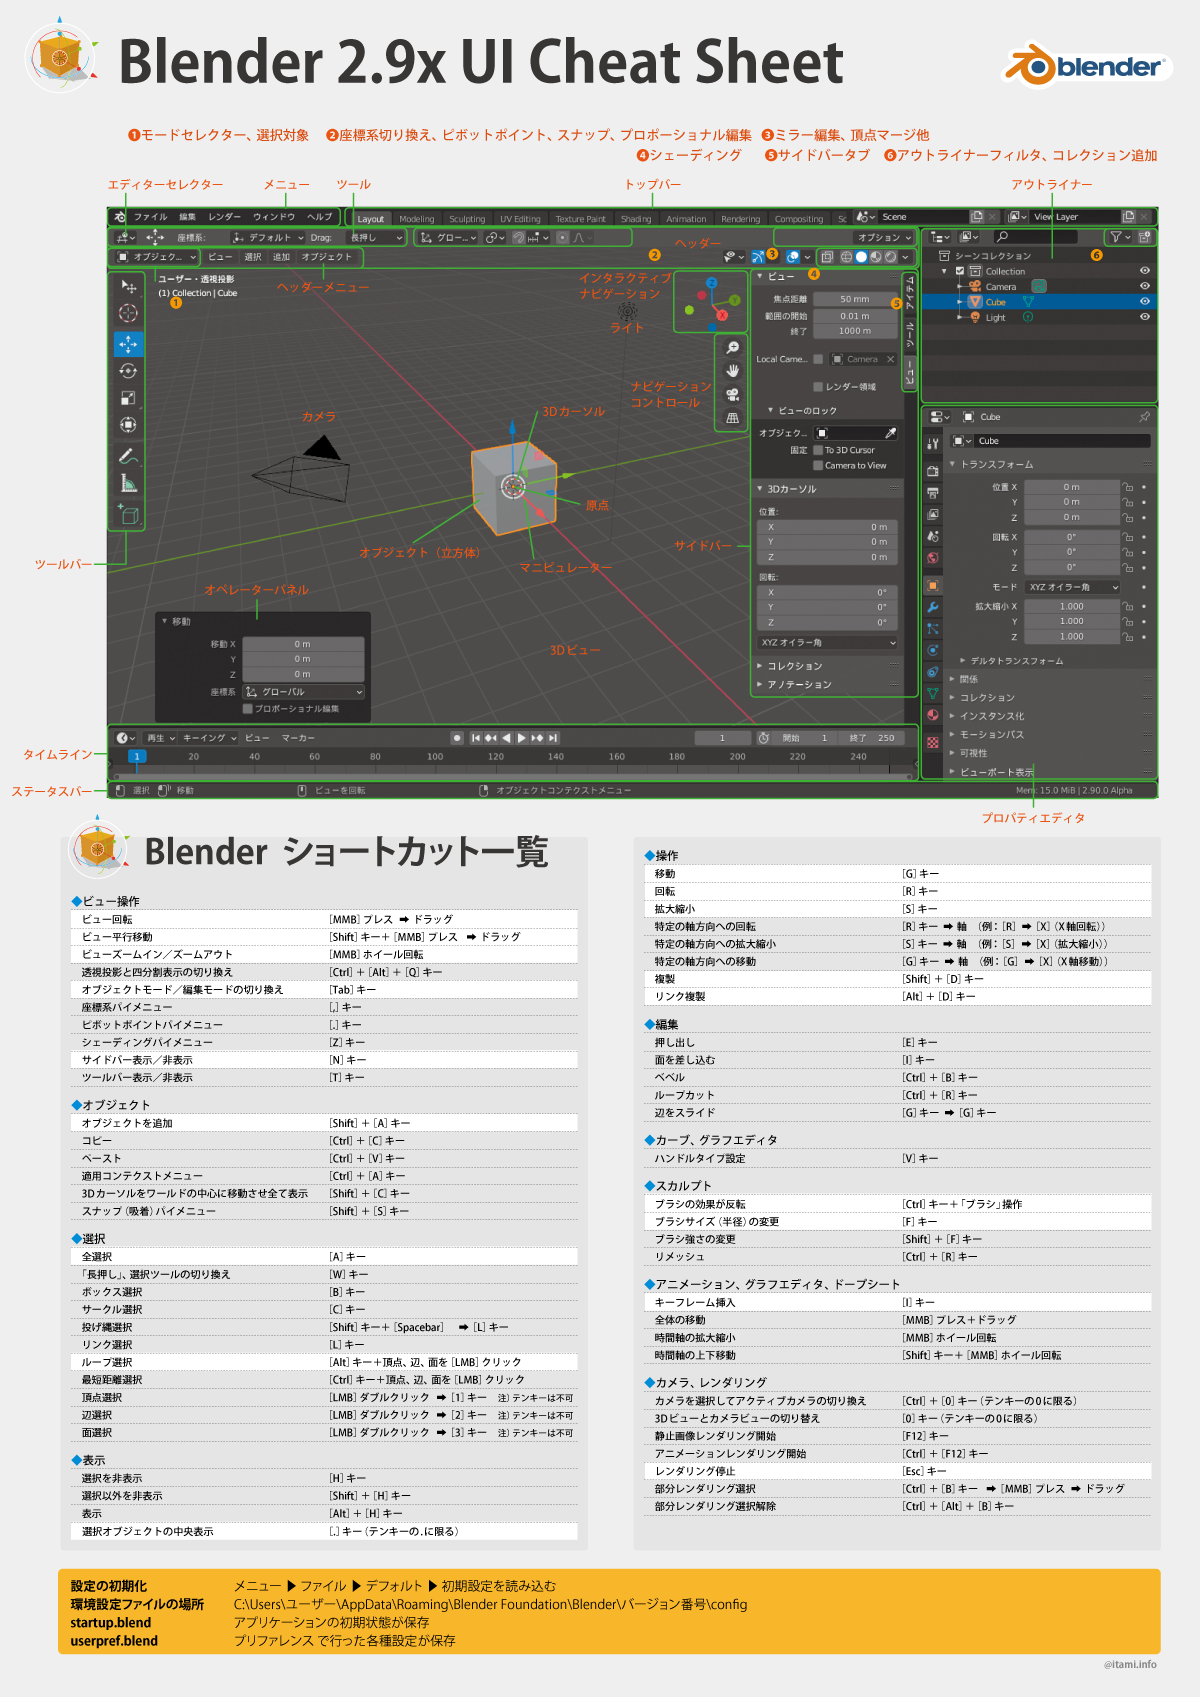 Blender 2.9x UI Cheat Sheet (Japanese) : Blender 2.9 UIチートシート